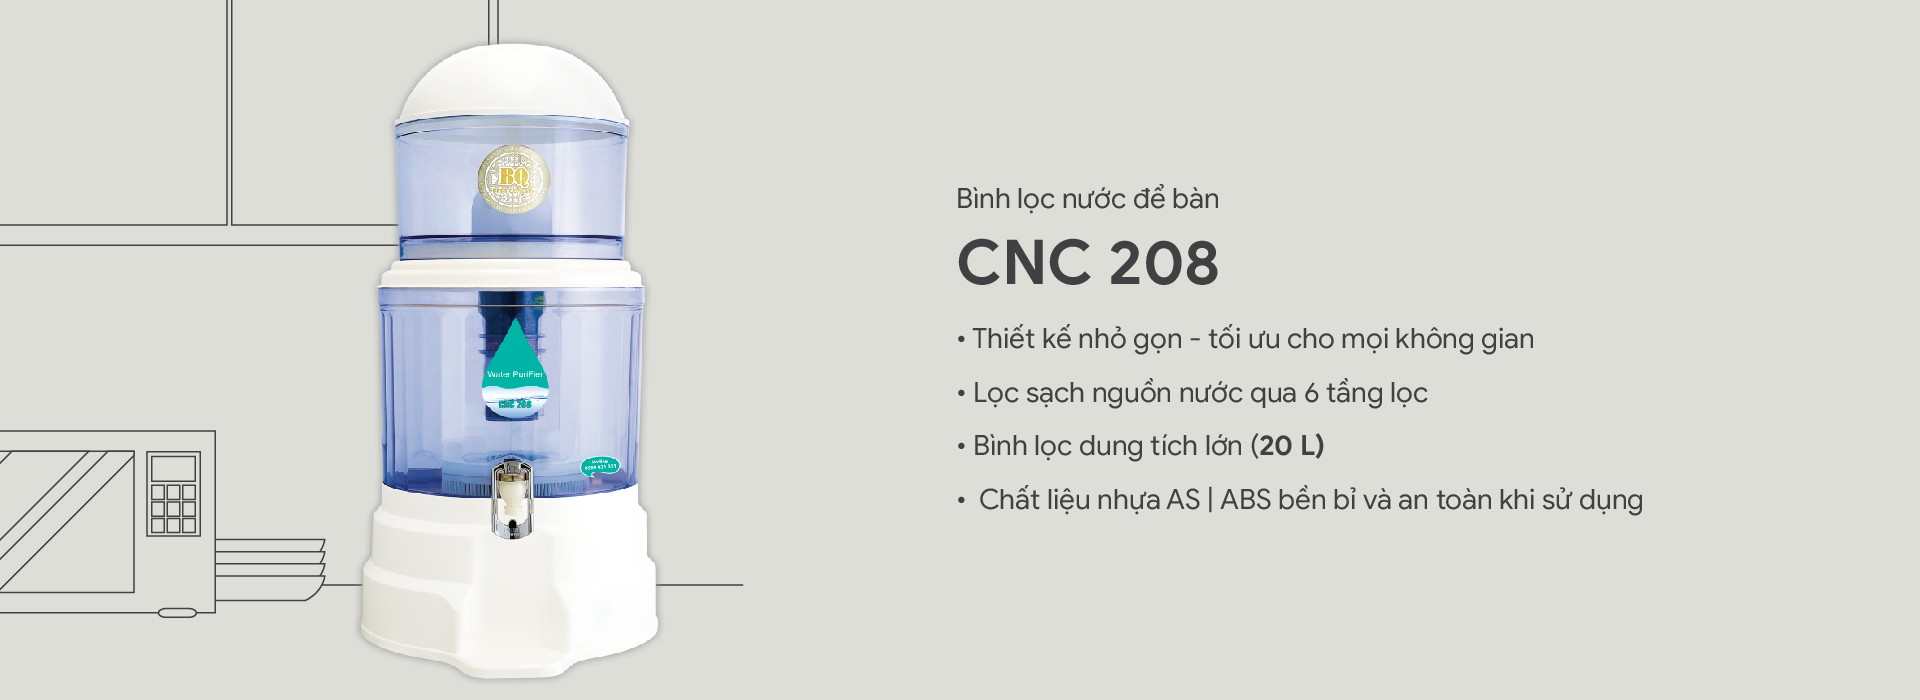 Bình lọc nước để bàn CNC208